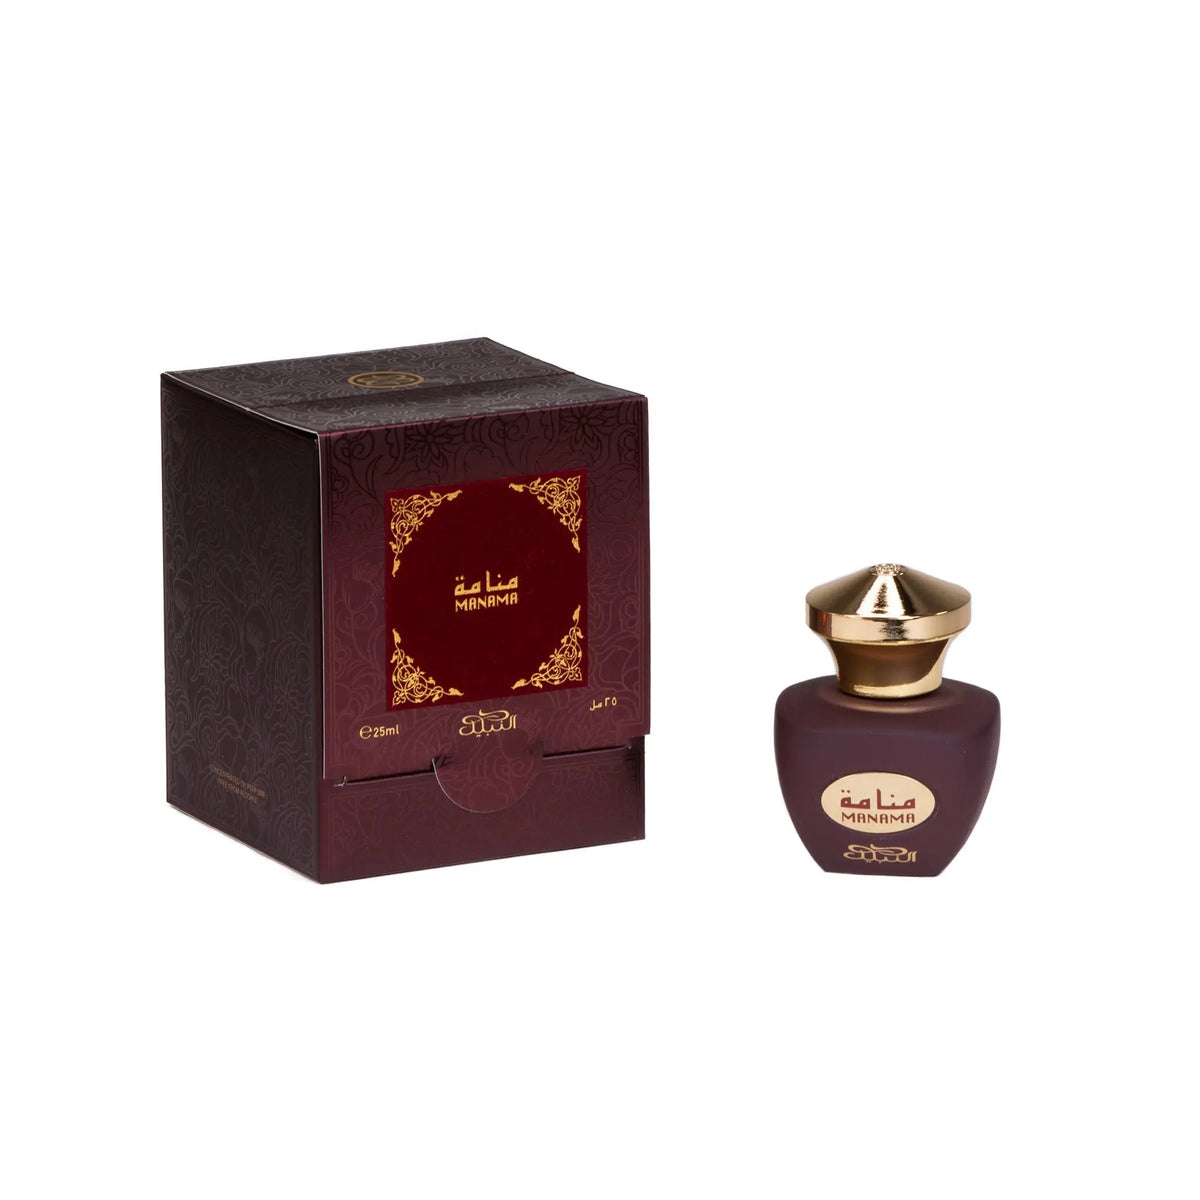 Manama Oil - Nabeel Perfumes